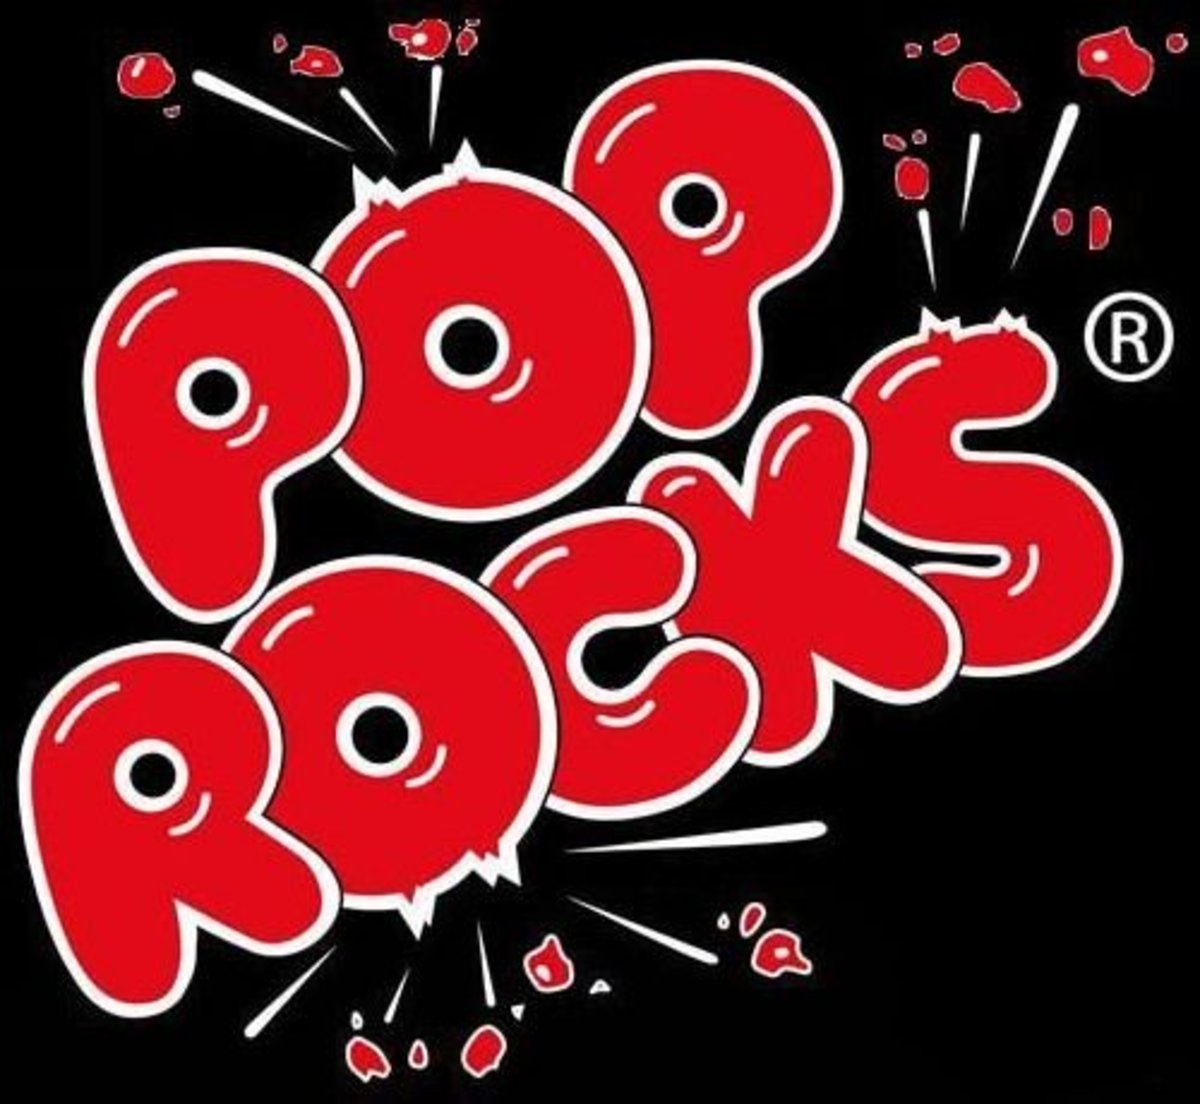 Pop Rocks